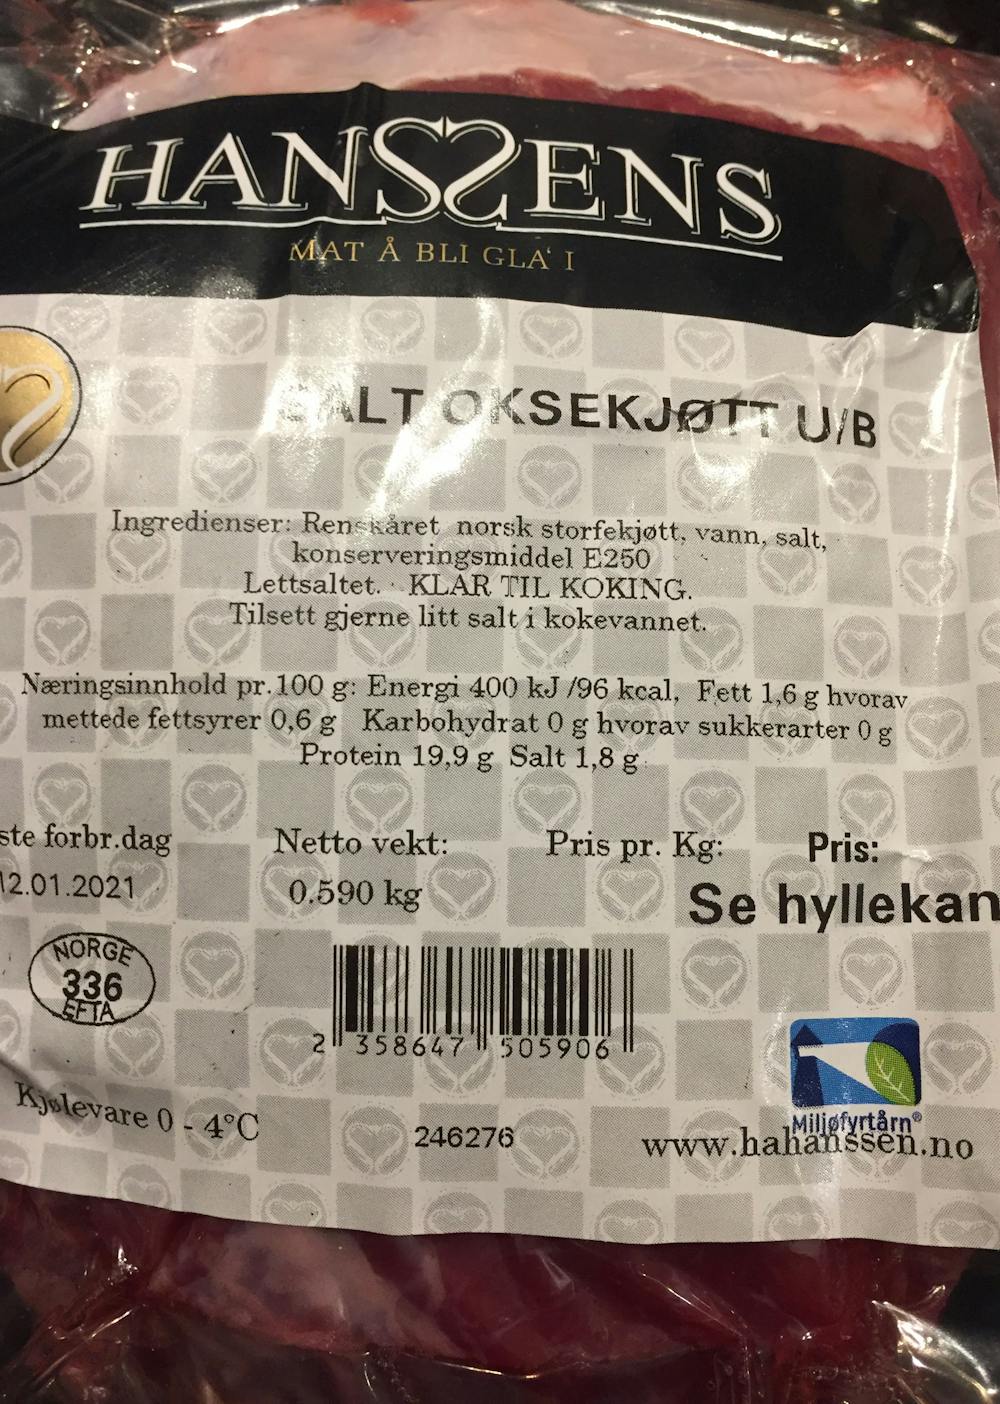 Ingredienslisten til Salt oksekjøtt, Hanssens